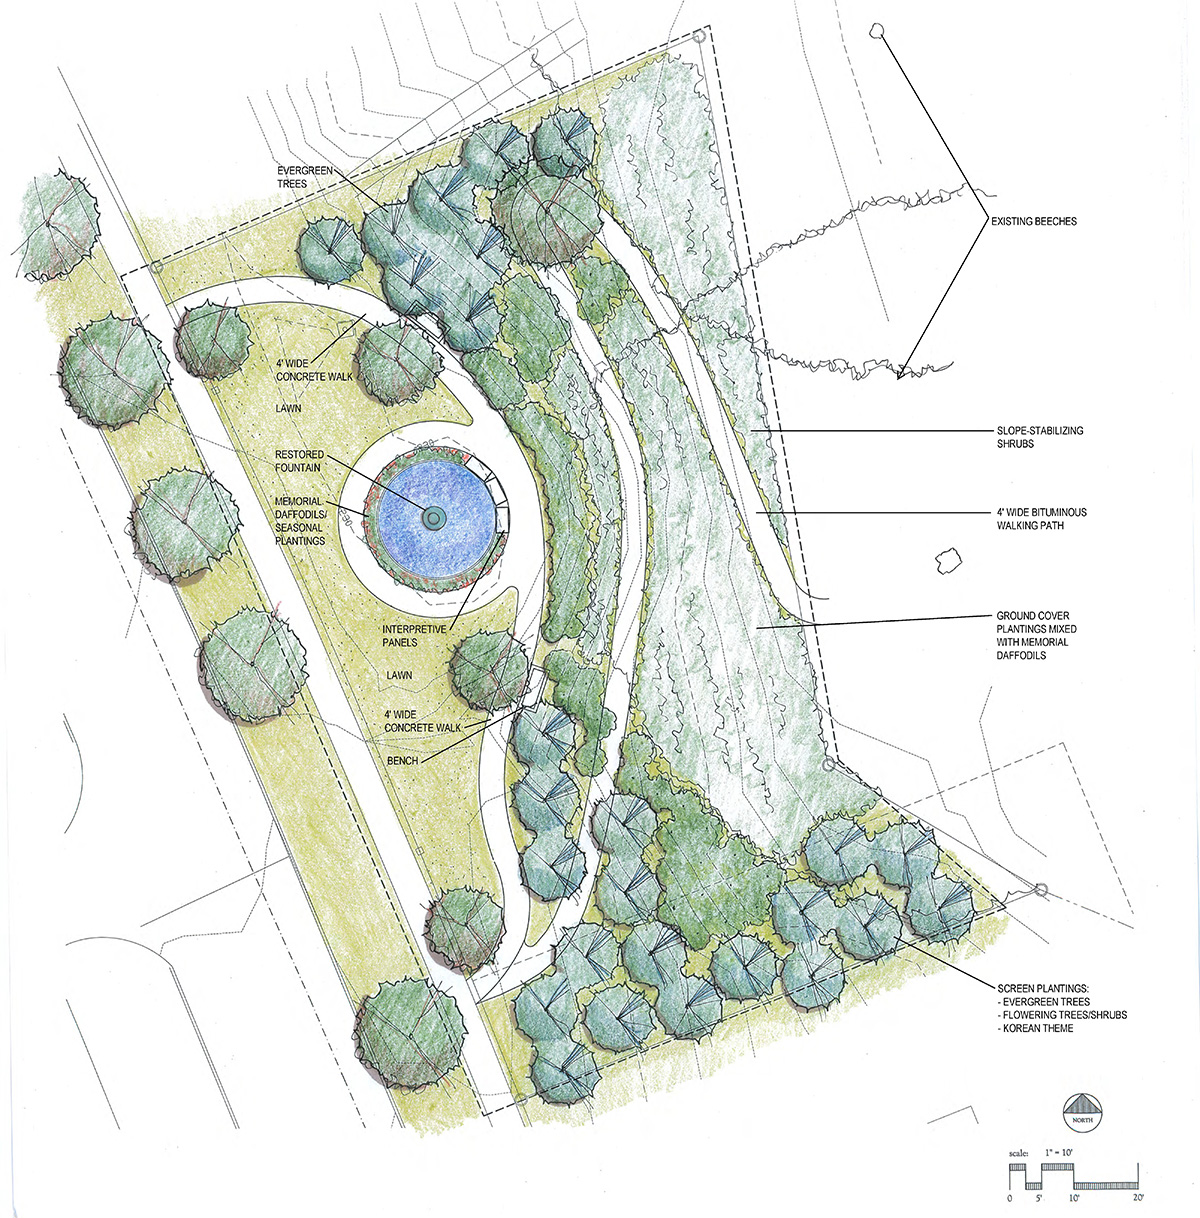 Nsh 2 park concept plan